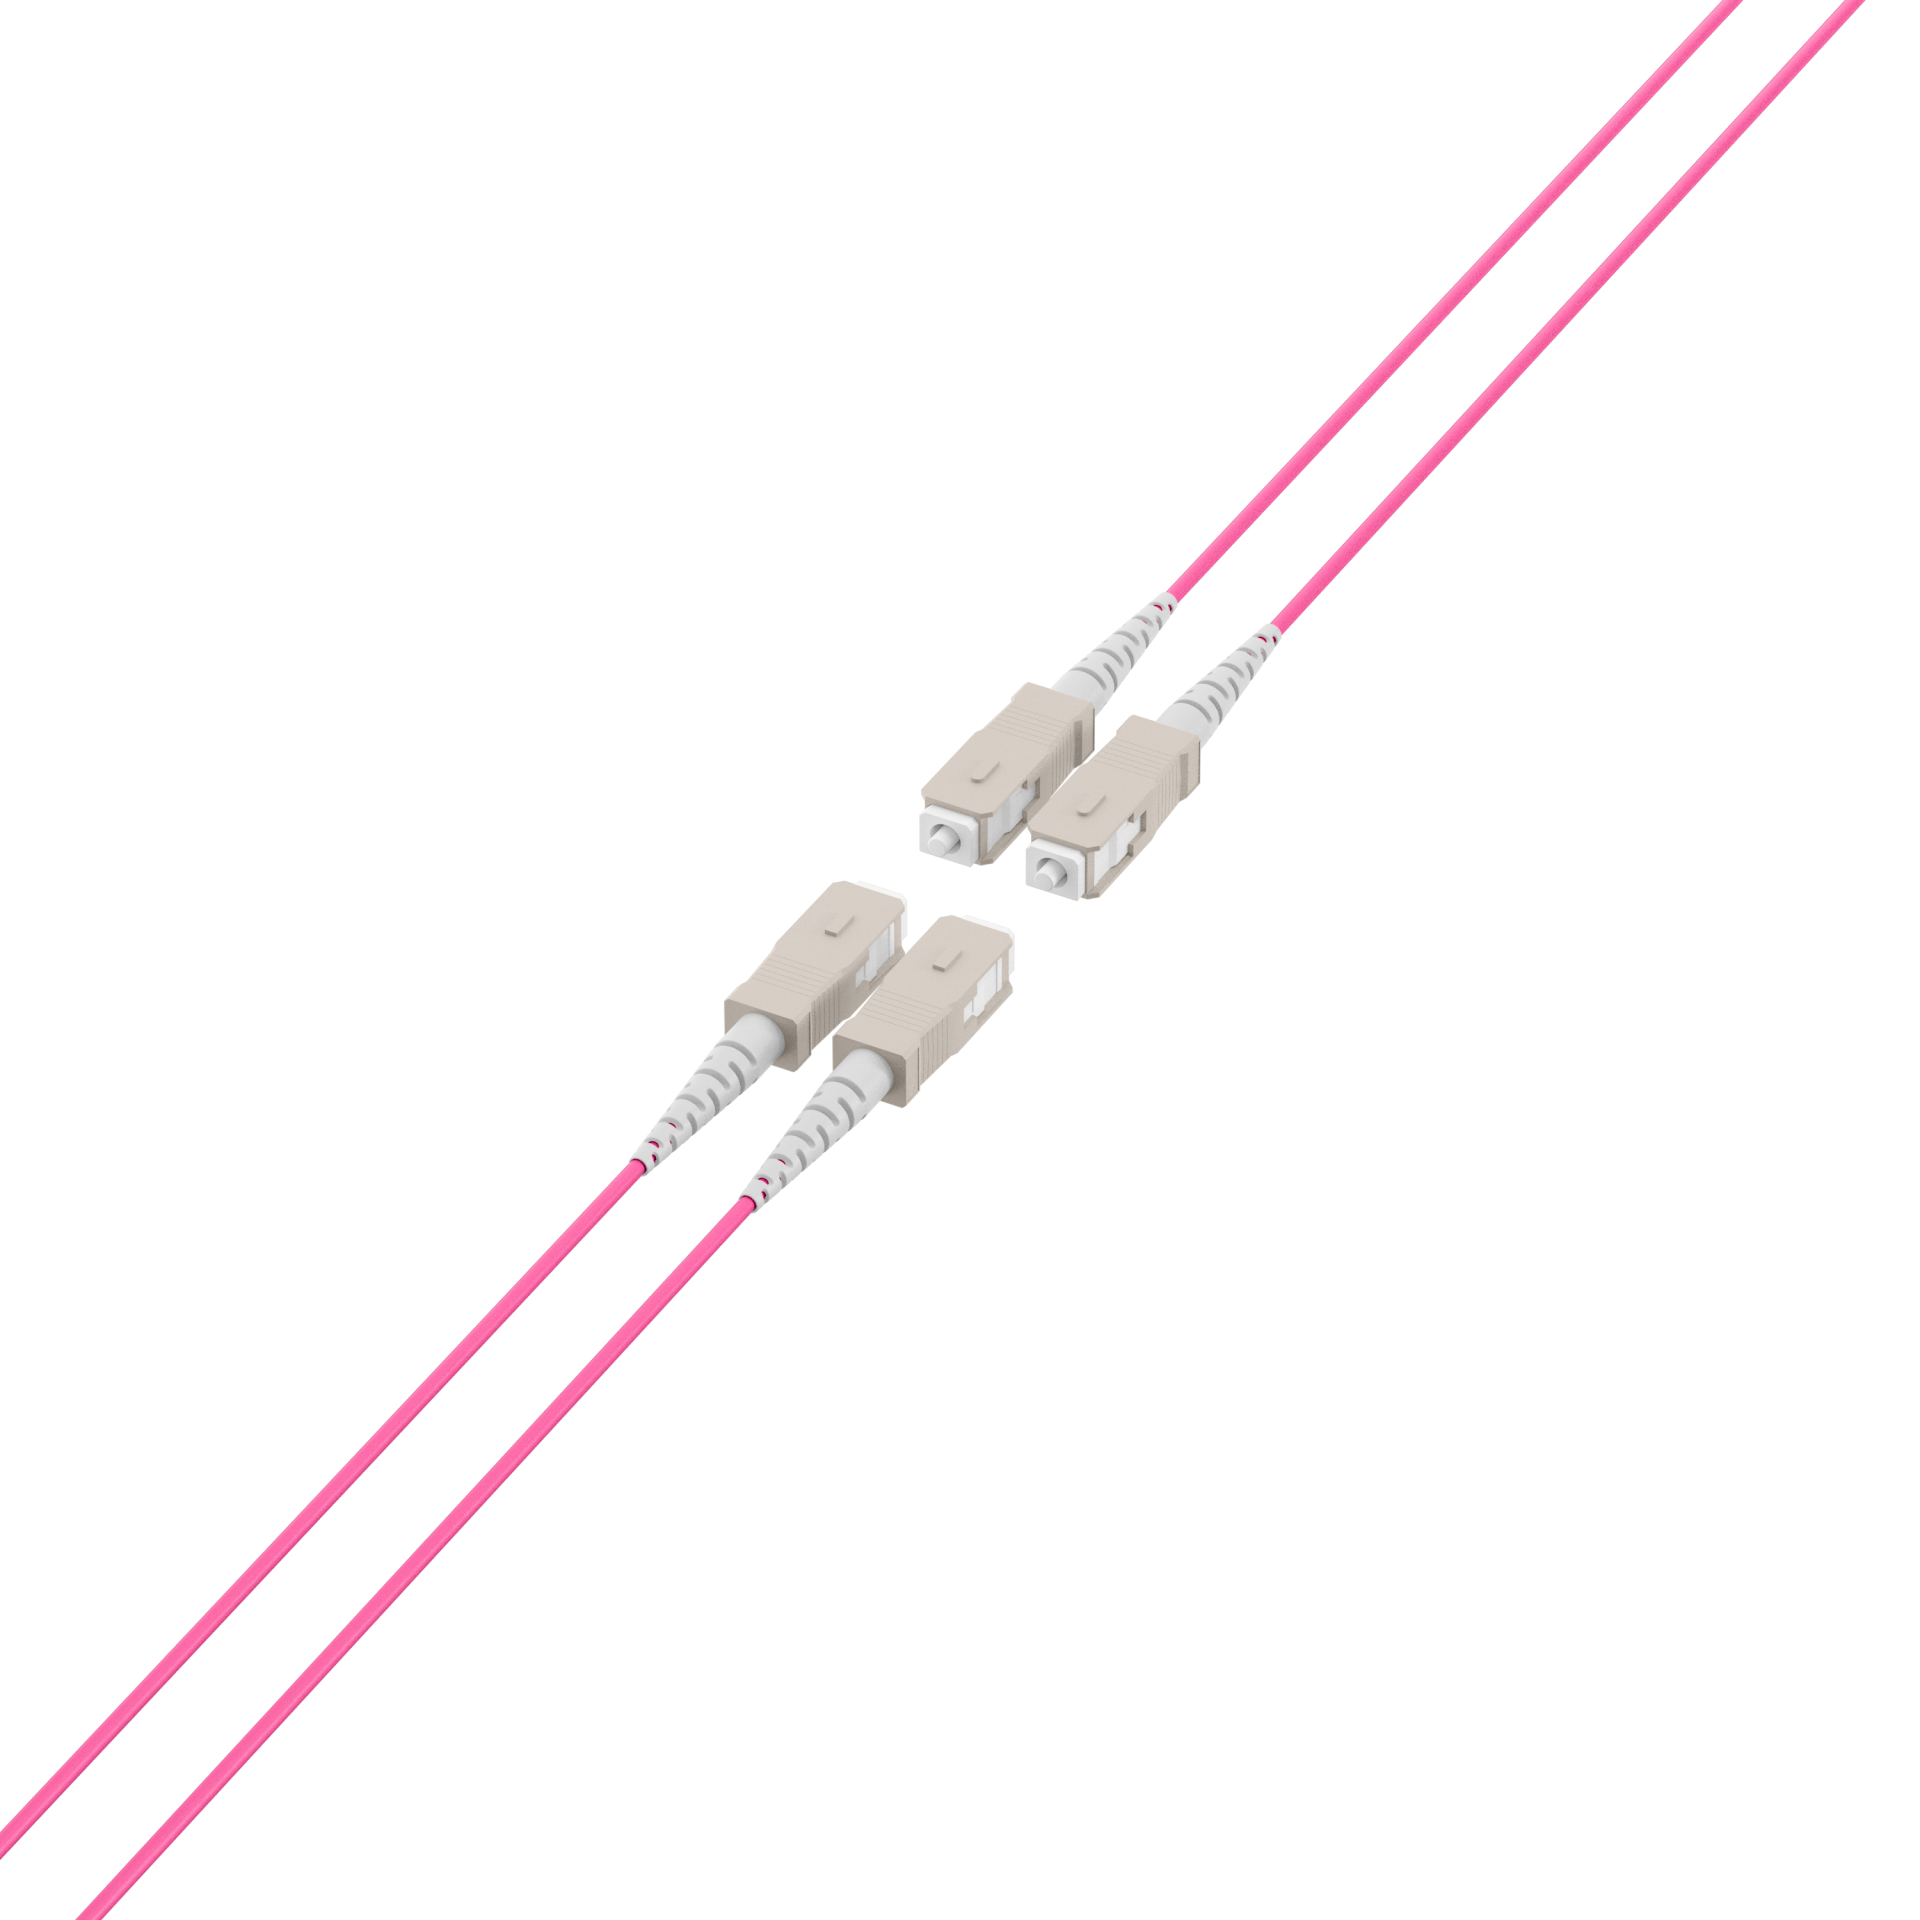 Trunk cable U-DQ(ZN)BH OM4 4G (1x4) SC-SC,190m Dca LSZH